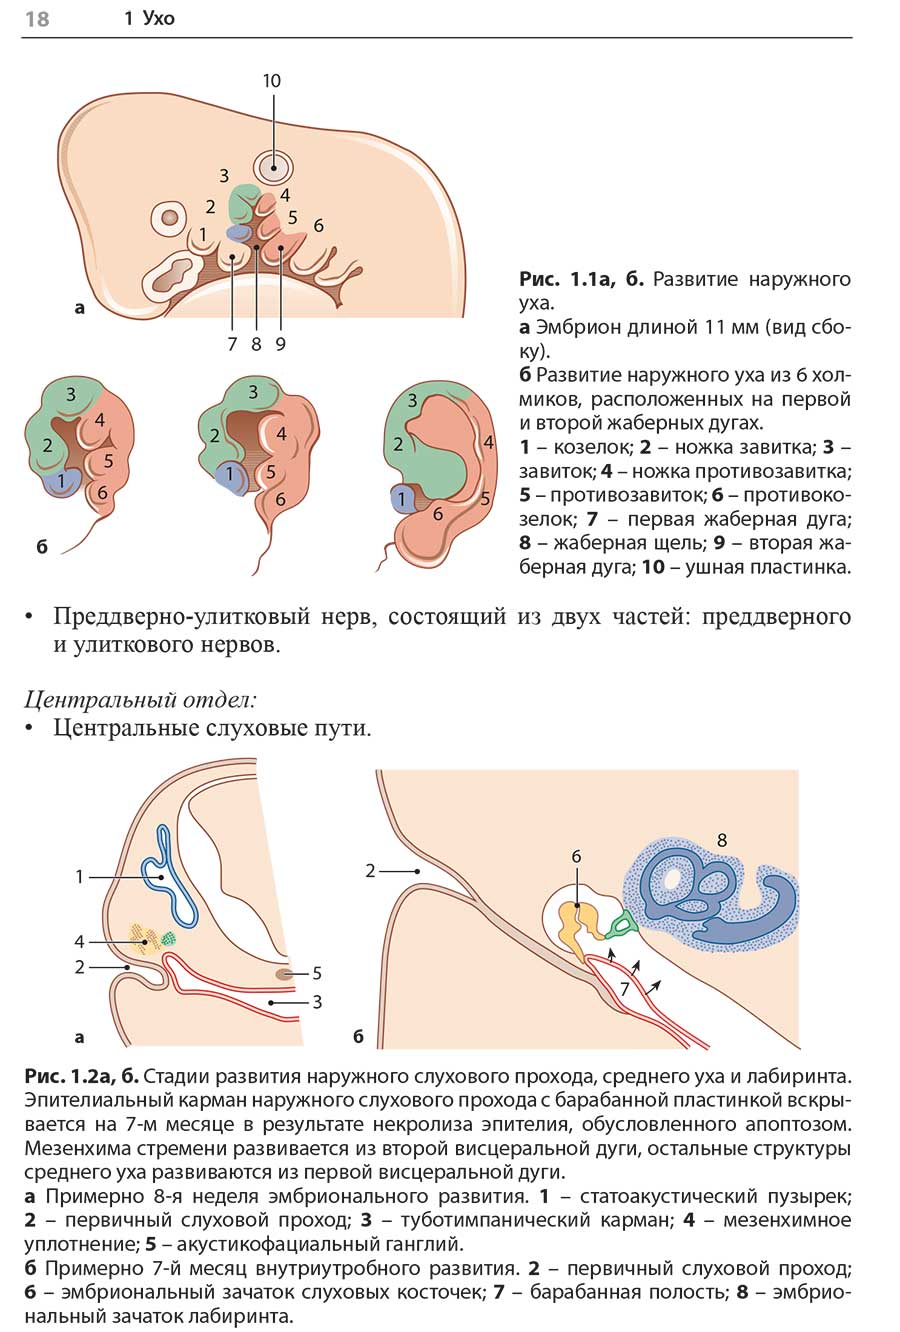 Рис. 1.2а, б. Стадии развития наружного слухового прохода, среднего уха и лабиринта.